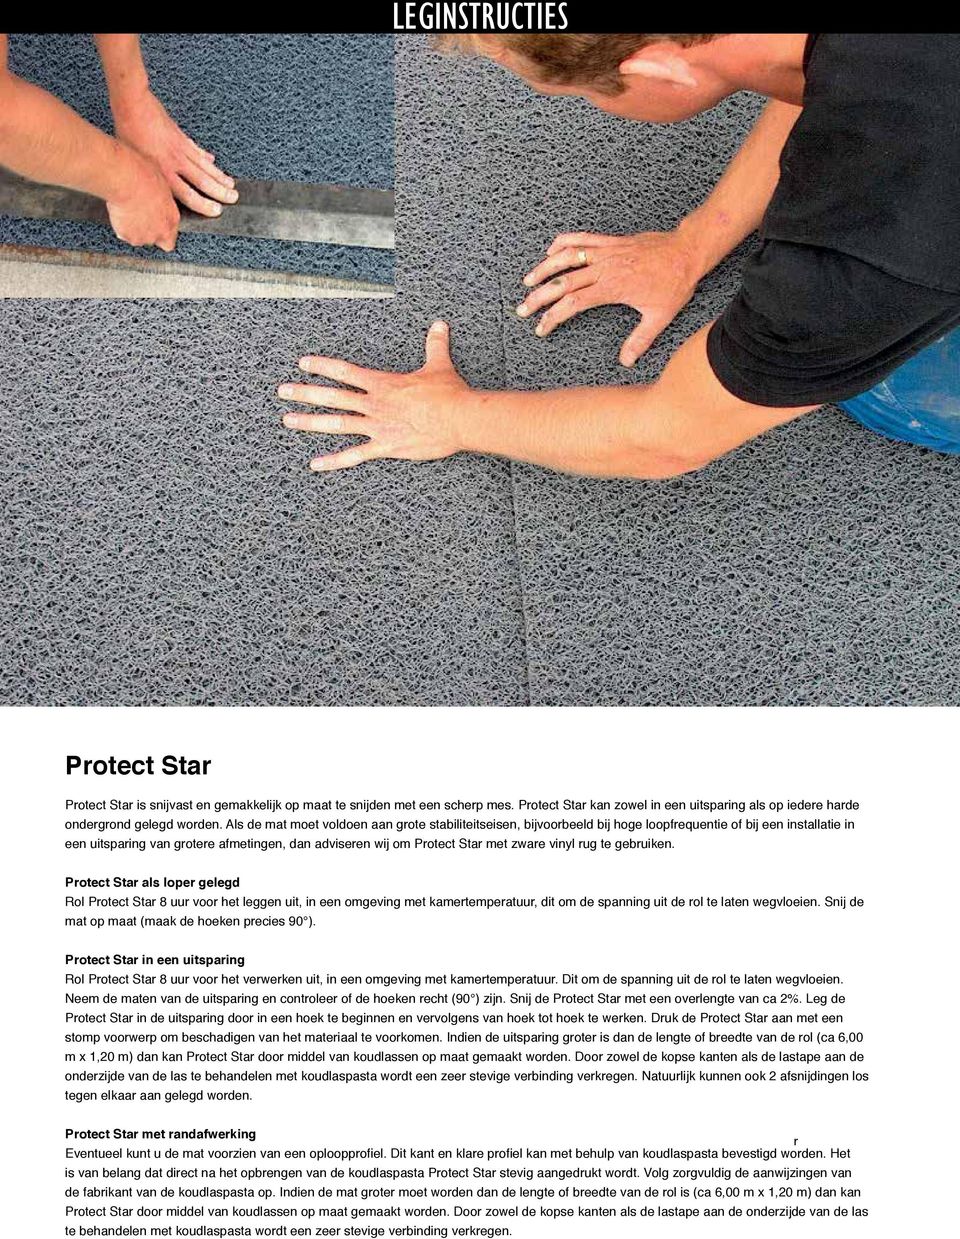 rug te gebruiken Protect Star als loper gelegd Rol Protect Star 8 uur voor het leggen uit, in een omgeving met kamertemperatuur, dit om de spanning uit de rol te laten wegvloeien Snij de mat op maat